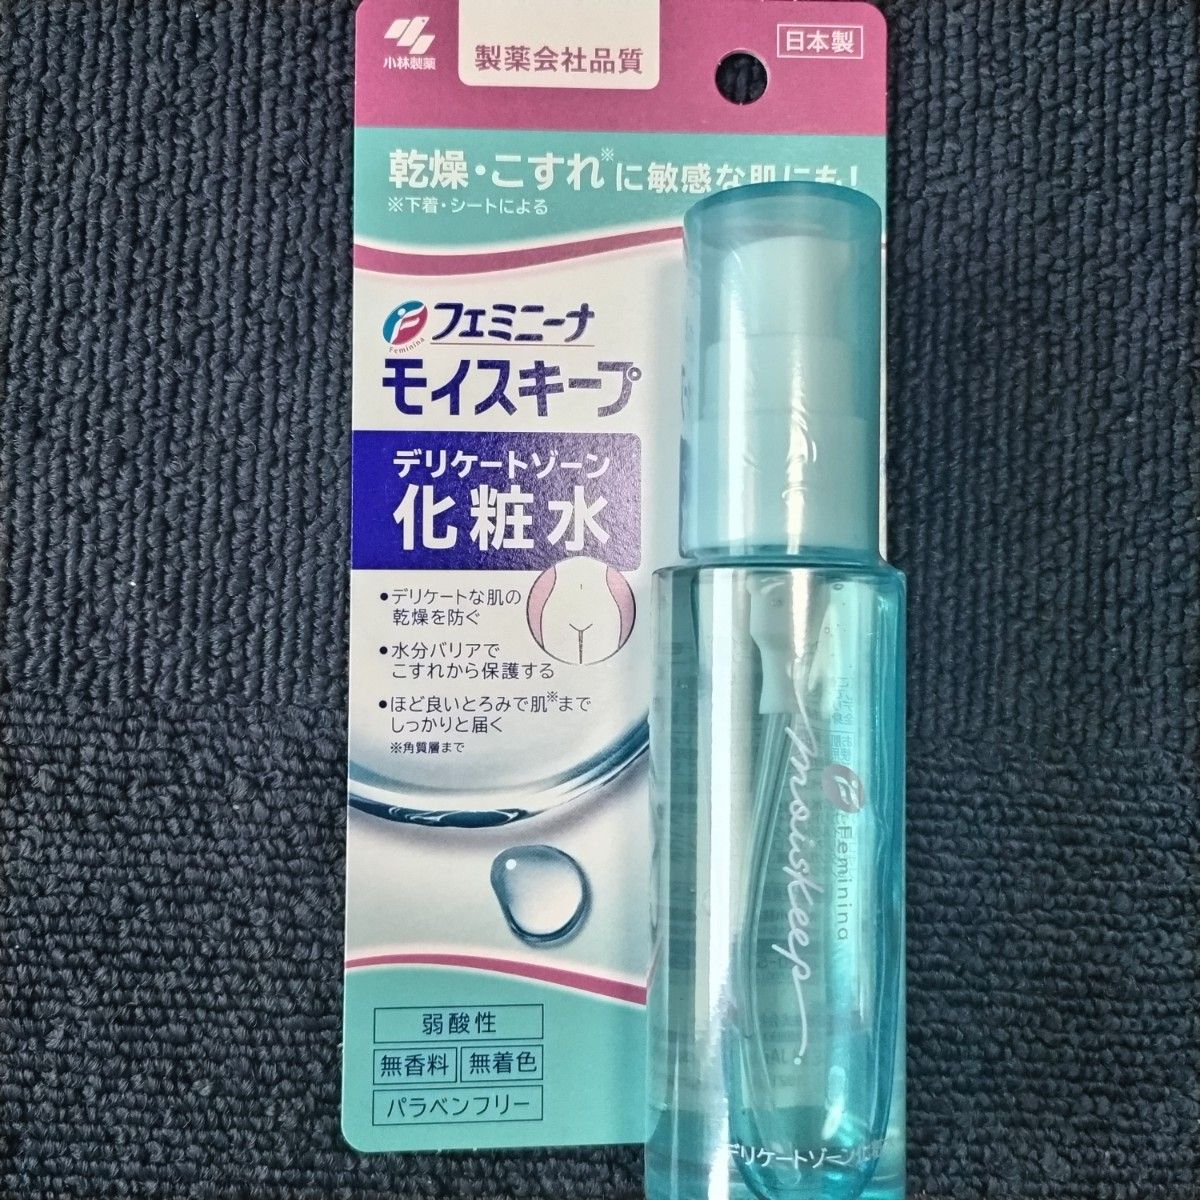 【新品未使用】フェミニーナ モイスキープ デリケートゾーン 化粧水